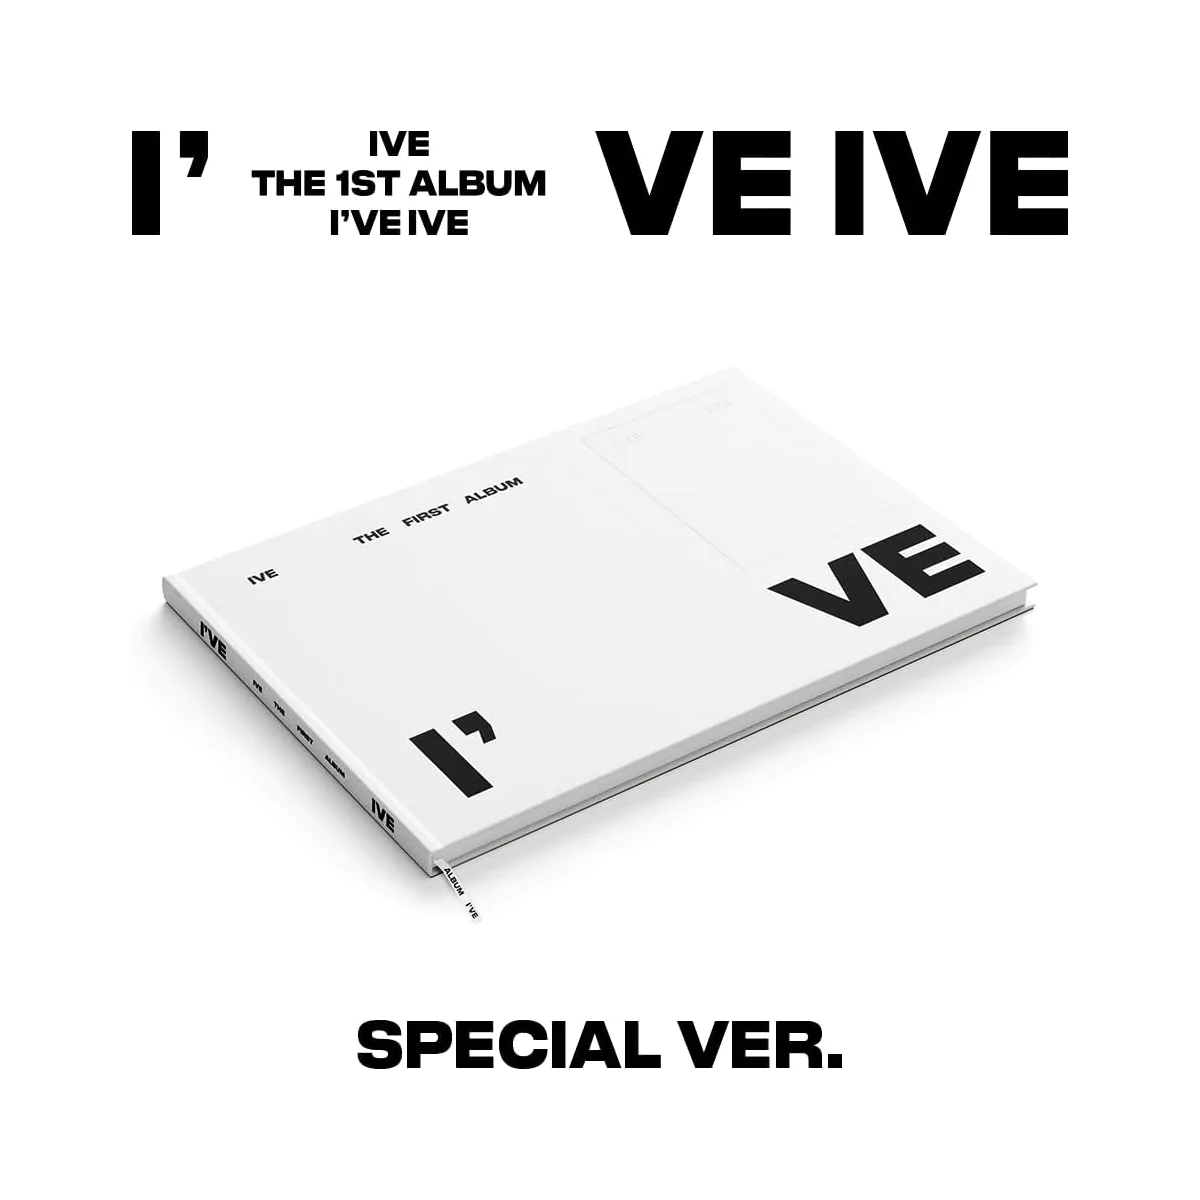 IVE - I've IVE (Special Version) (1st Album) 